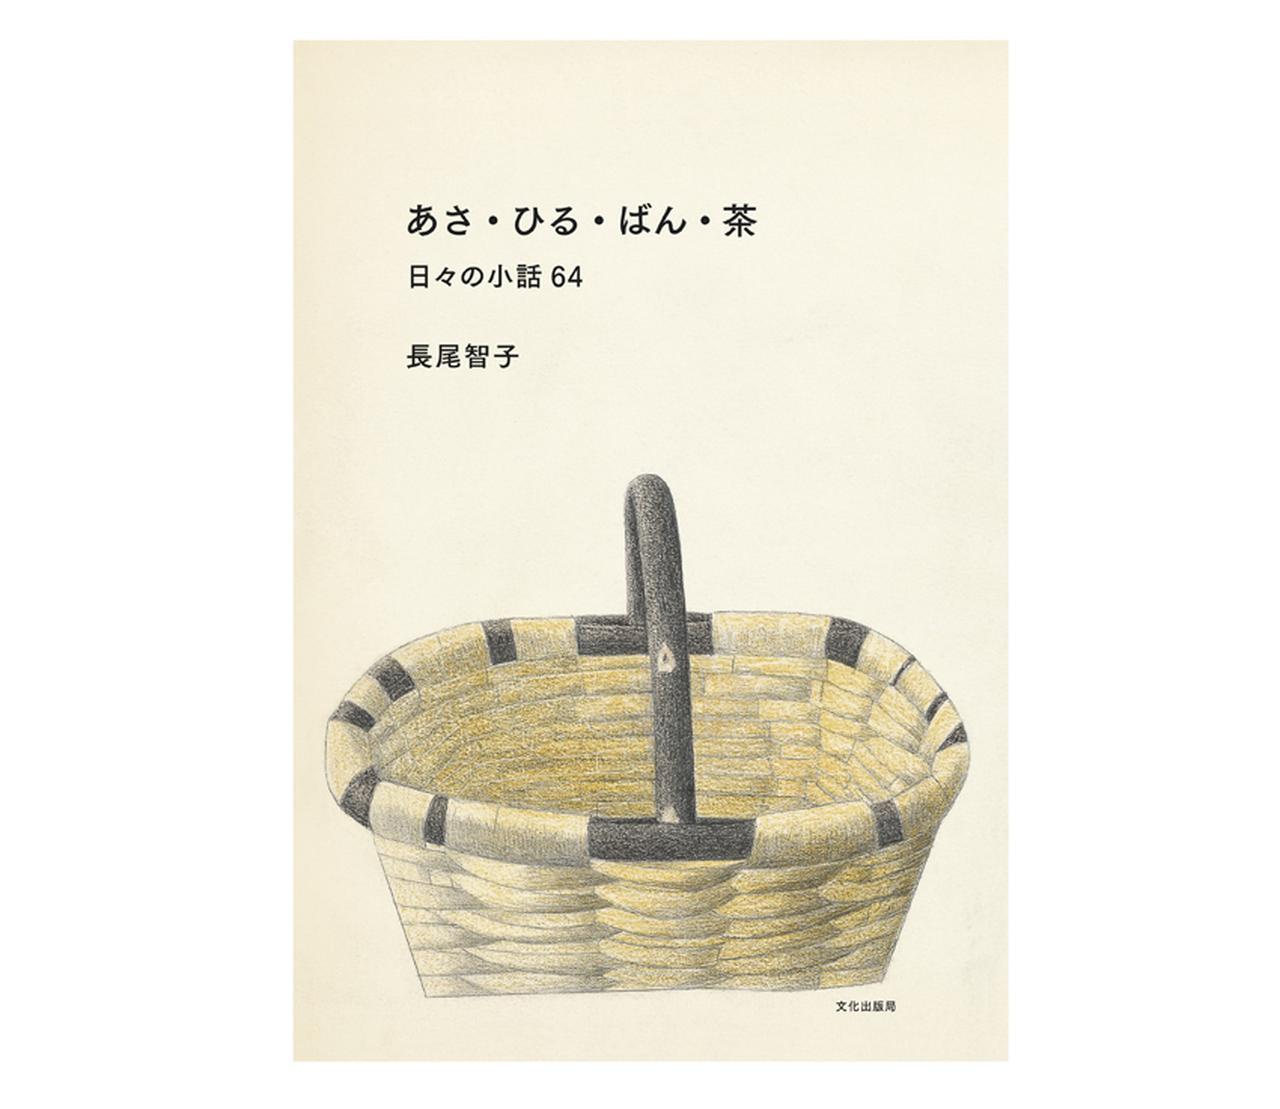 book 『あさ・ひる・ばん・茶』